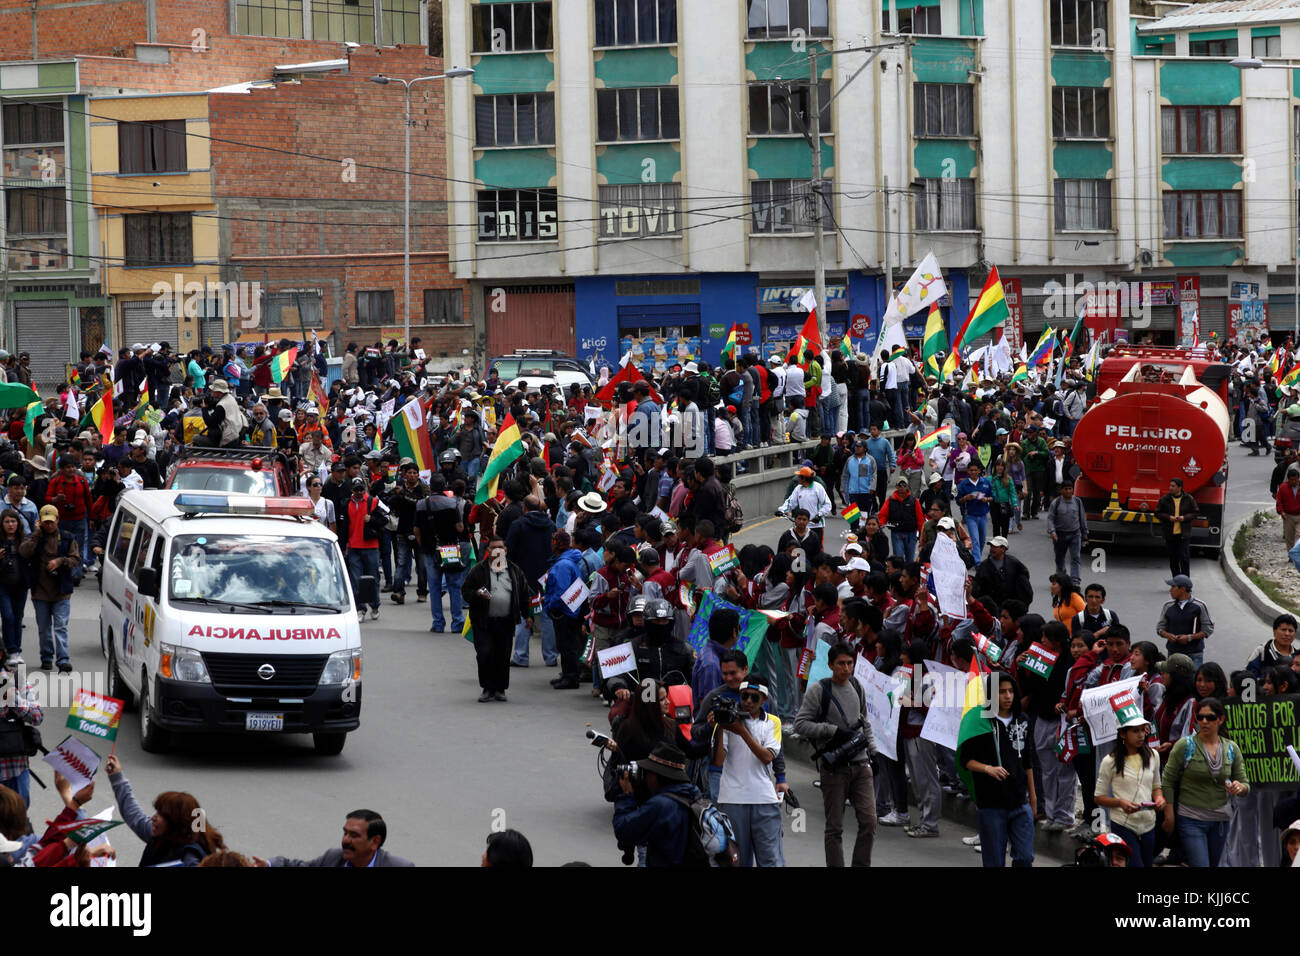 Les foules bienvenue le VIII Mars dans la défense de la TIPNIS (qui quitté Trinidad le 15 août 2011) dès leur arrivée à La Paz, Bolivie Banque D'Images